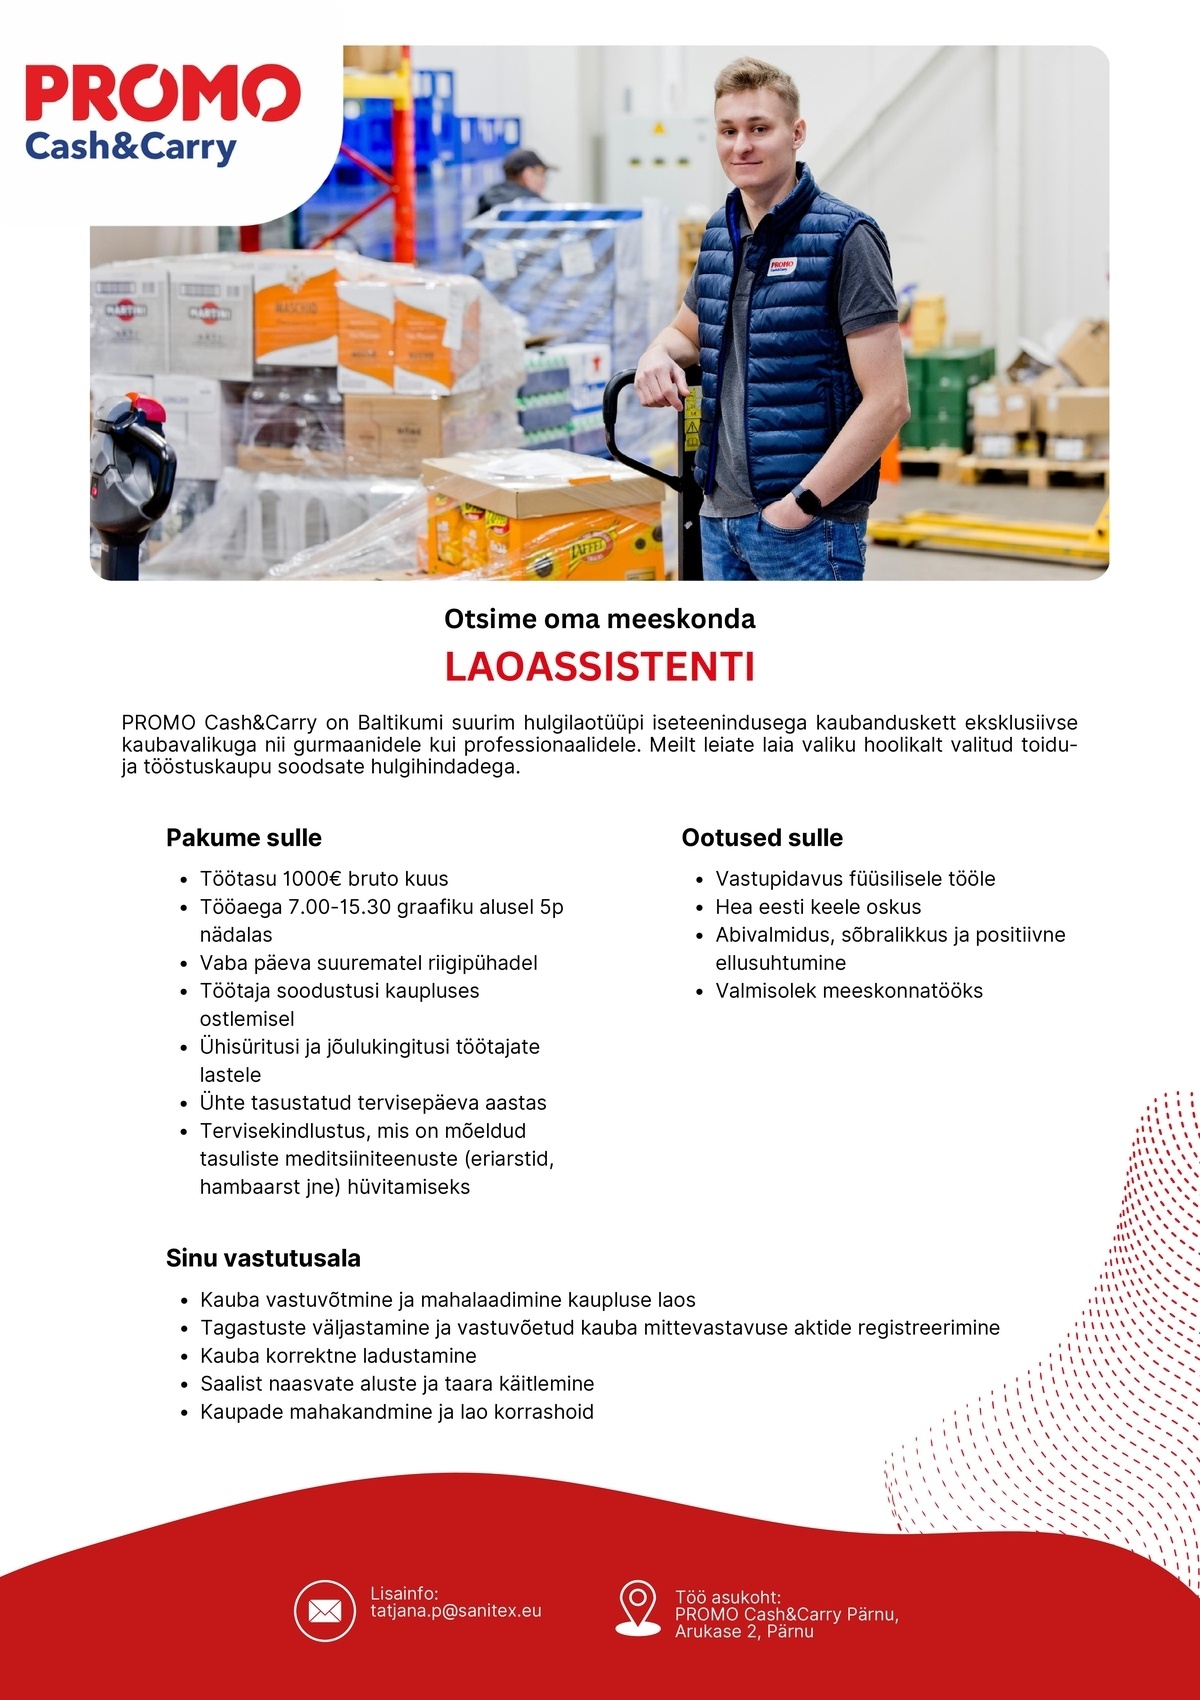 Sanitex OÜ Laoassistent Pärnu Promo Cash&Carry hulgikaupluses